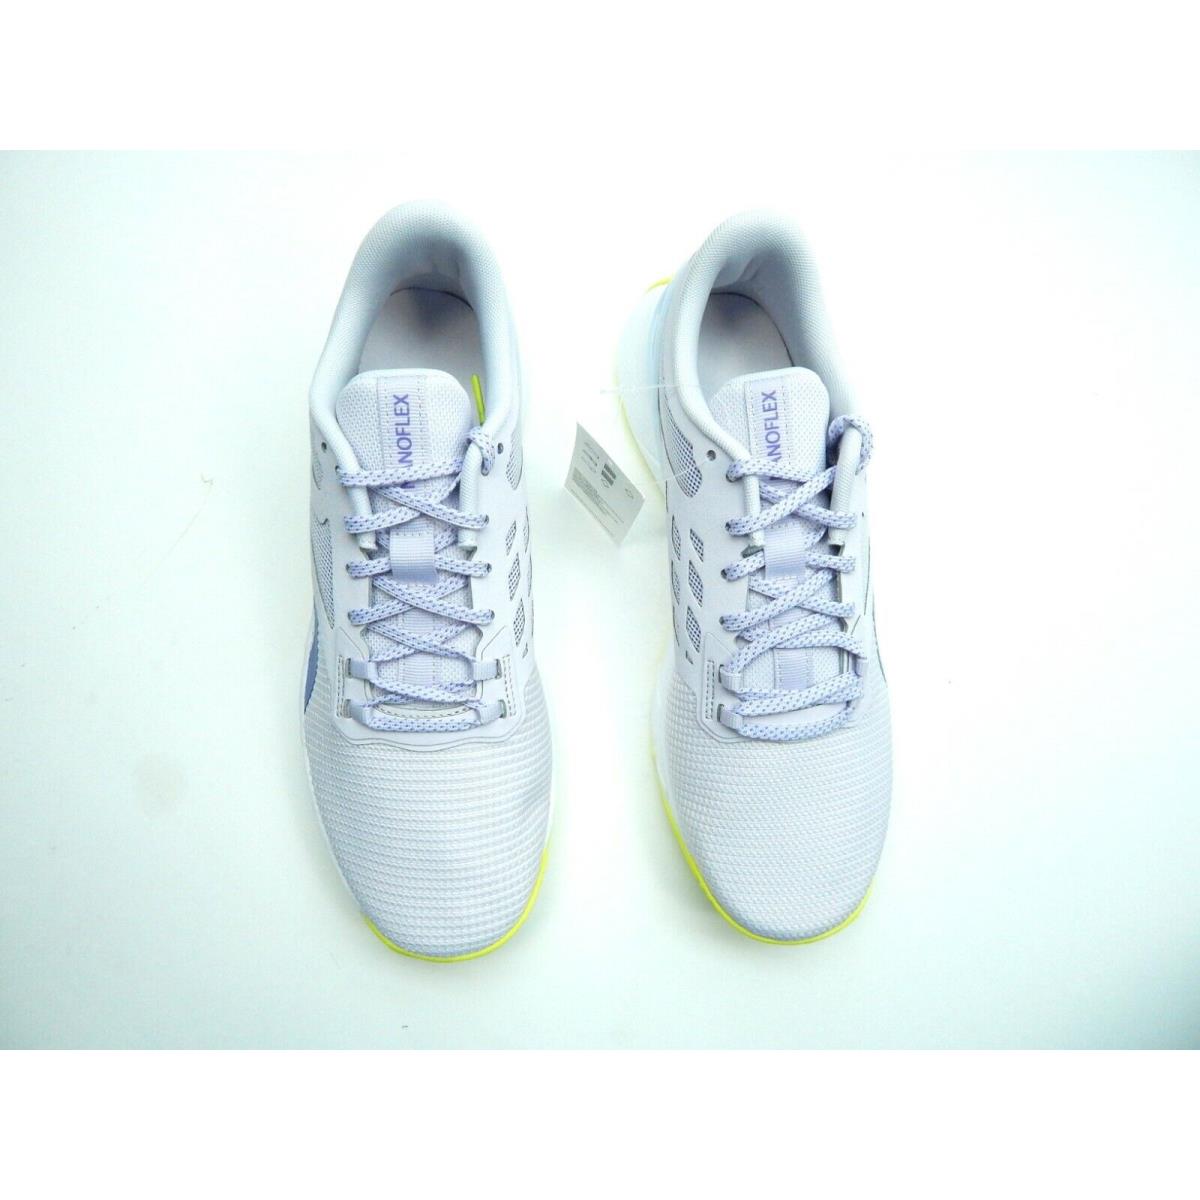 Reebok shoes NANOFLEX - LILAC WHITE 5